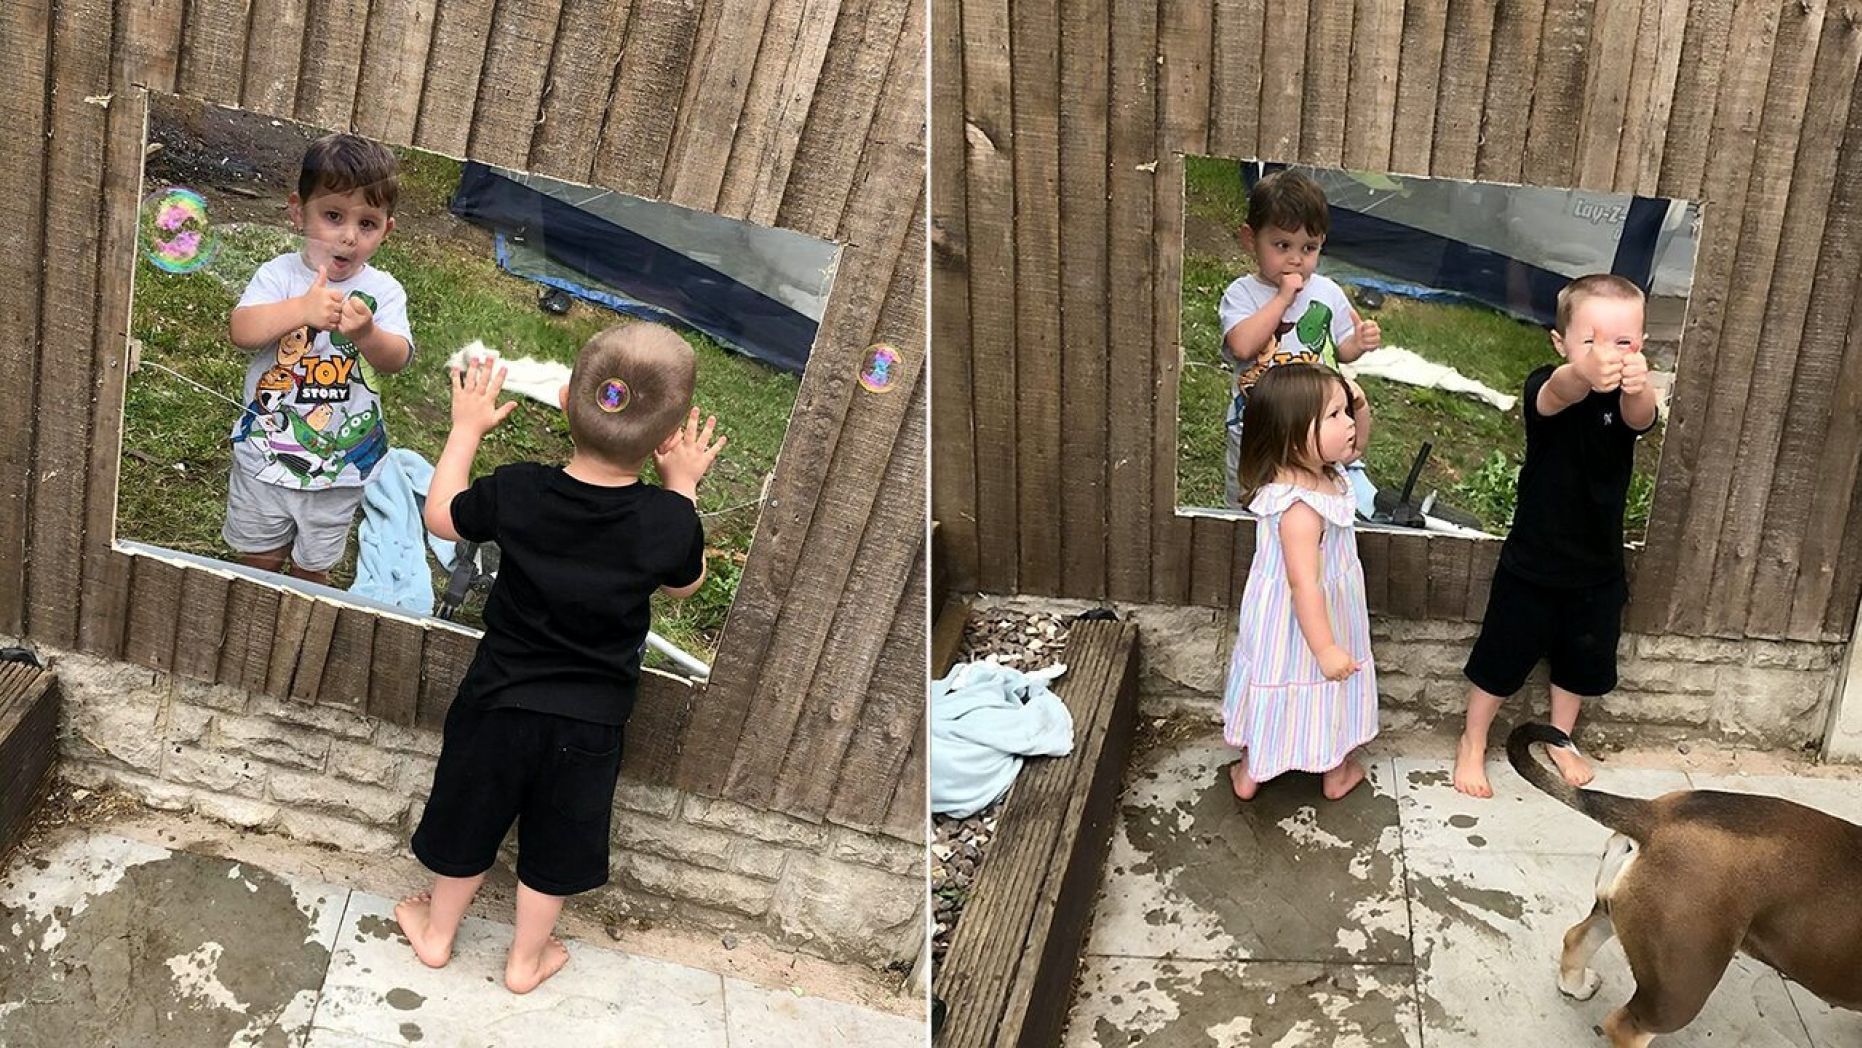  Мамы купили прозрачный забор, чтобы их дети могли играть вместе